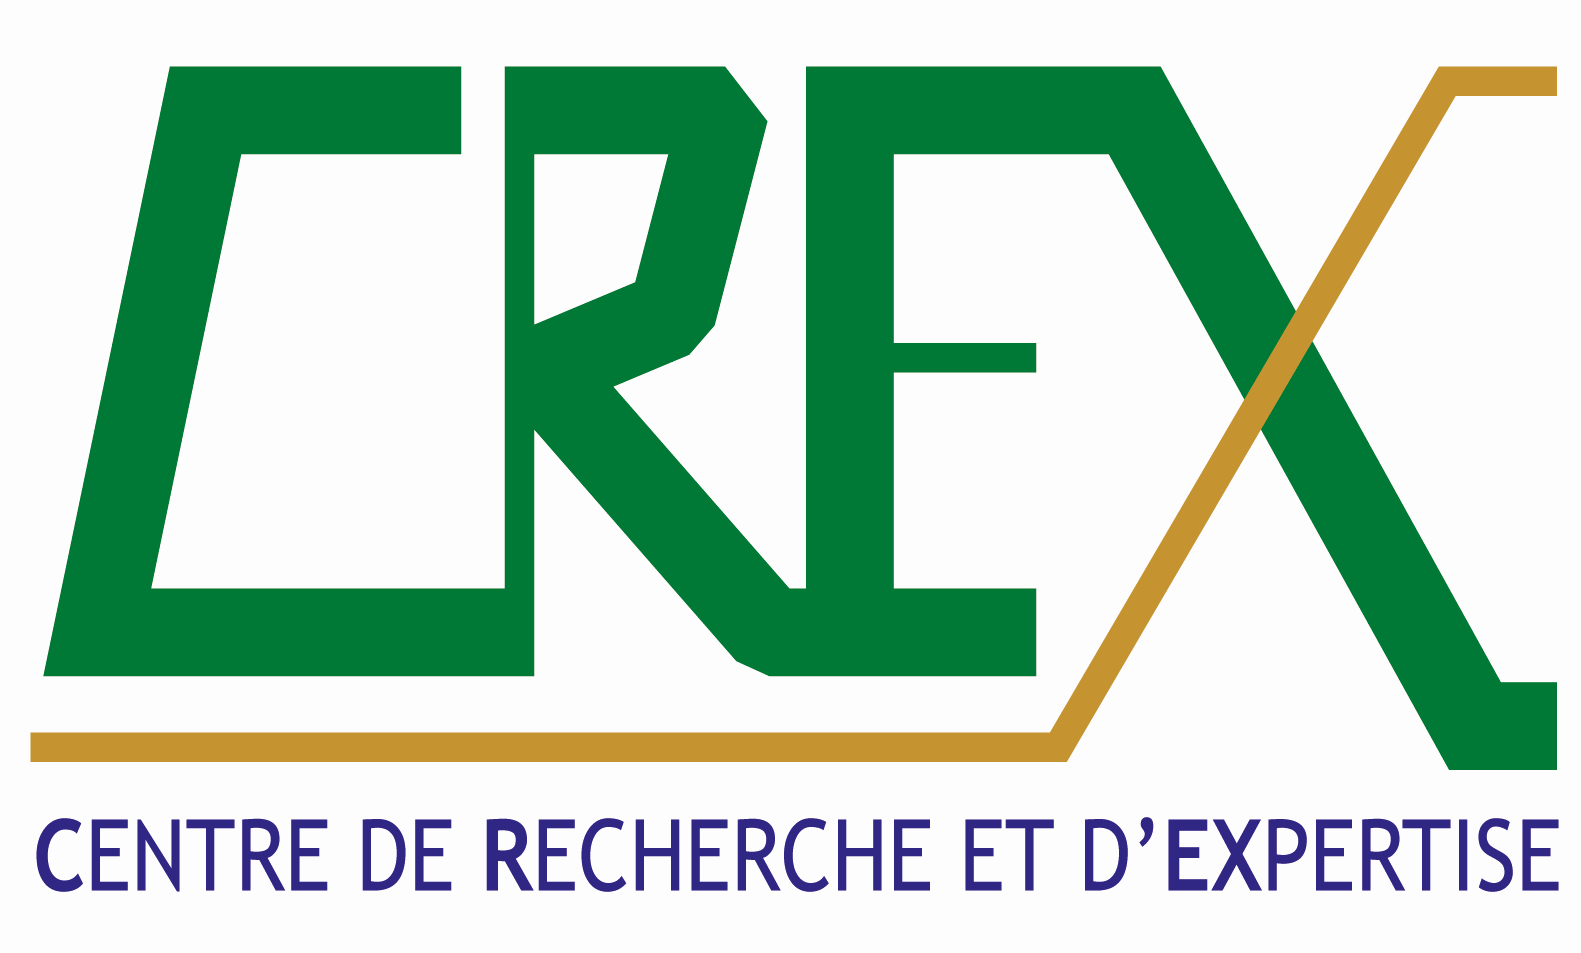 Centre de Recherche et d'Expertise - CREX